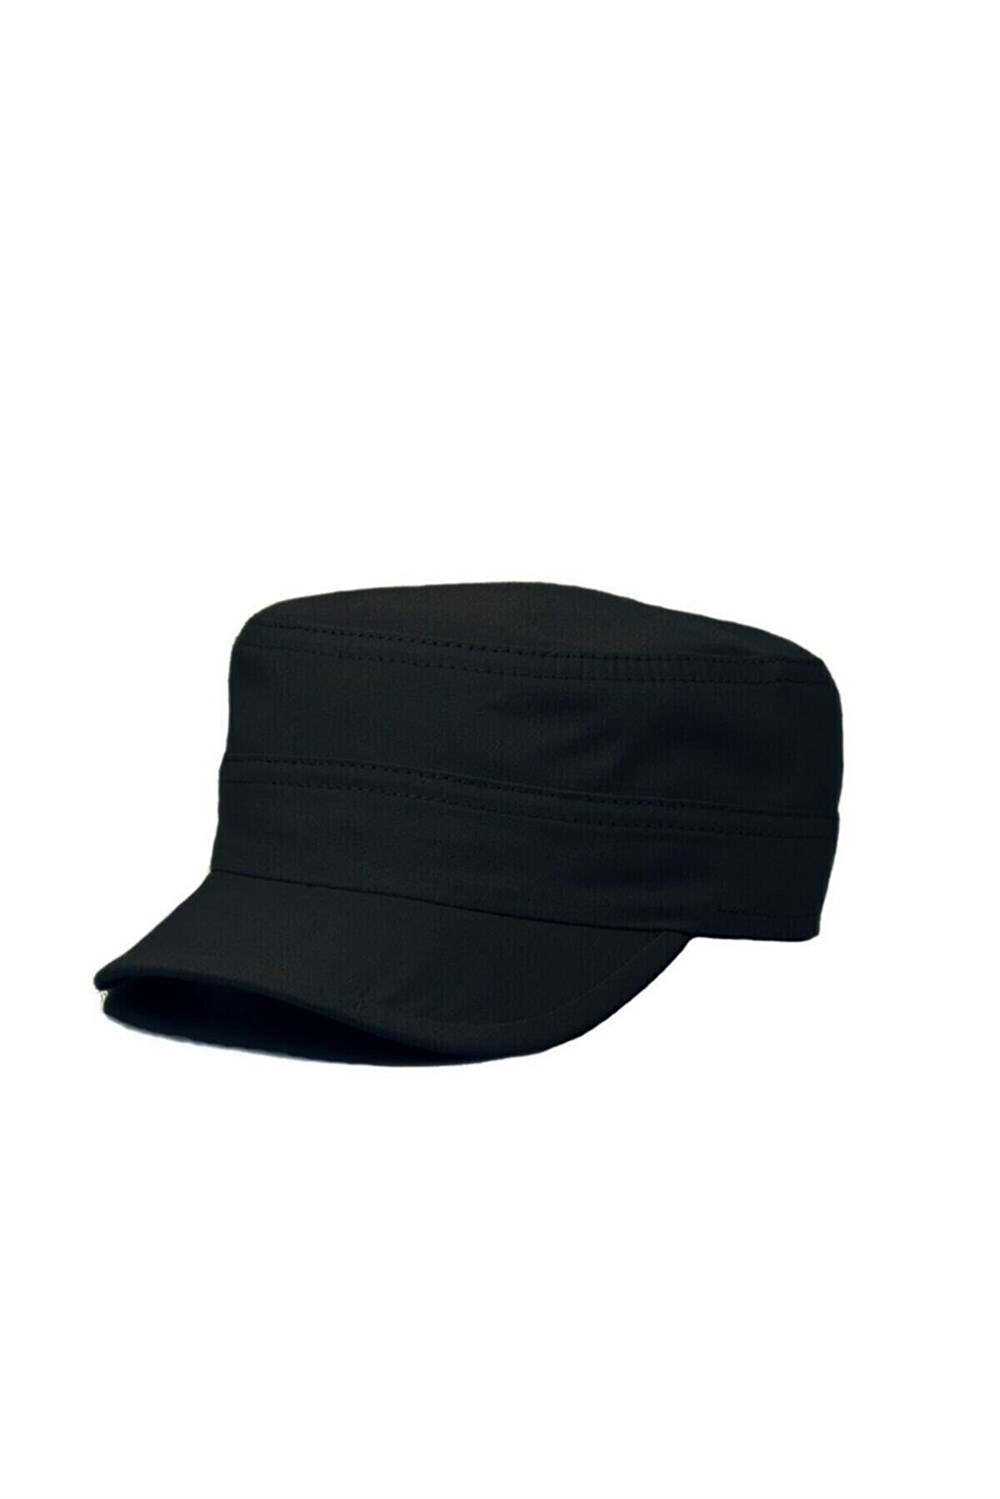 Belifanti Collection Erkek Castro Şapka Kasket Siyah Avcı Model Şapka -  Hediyecixo